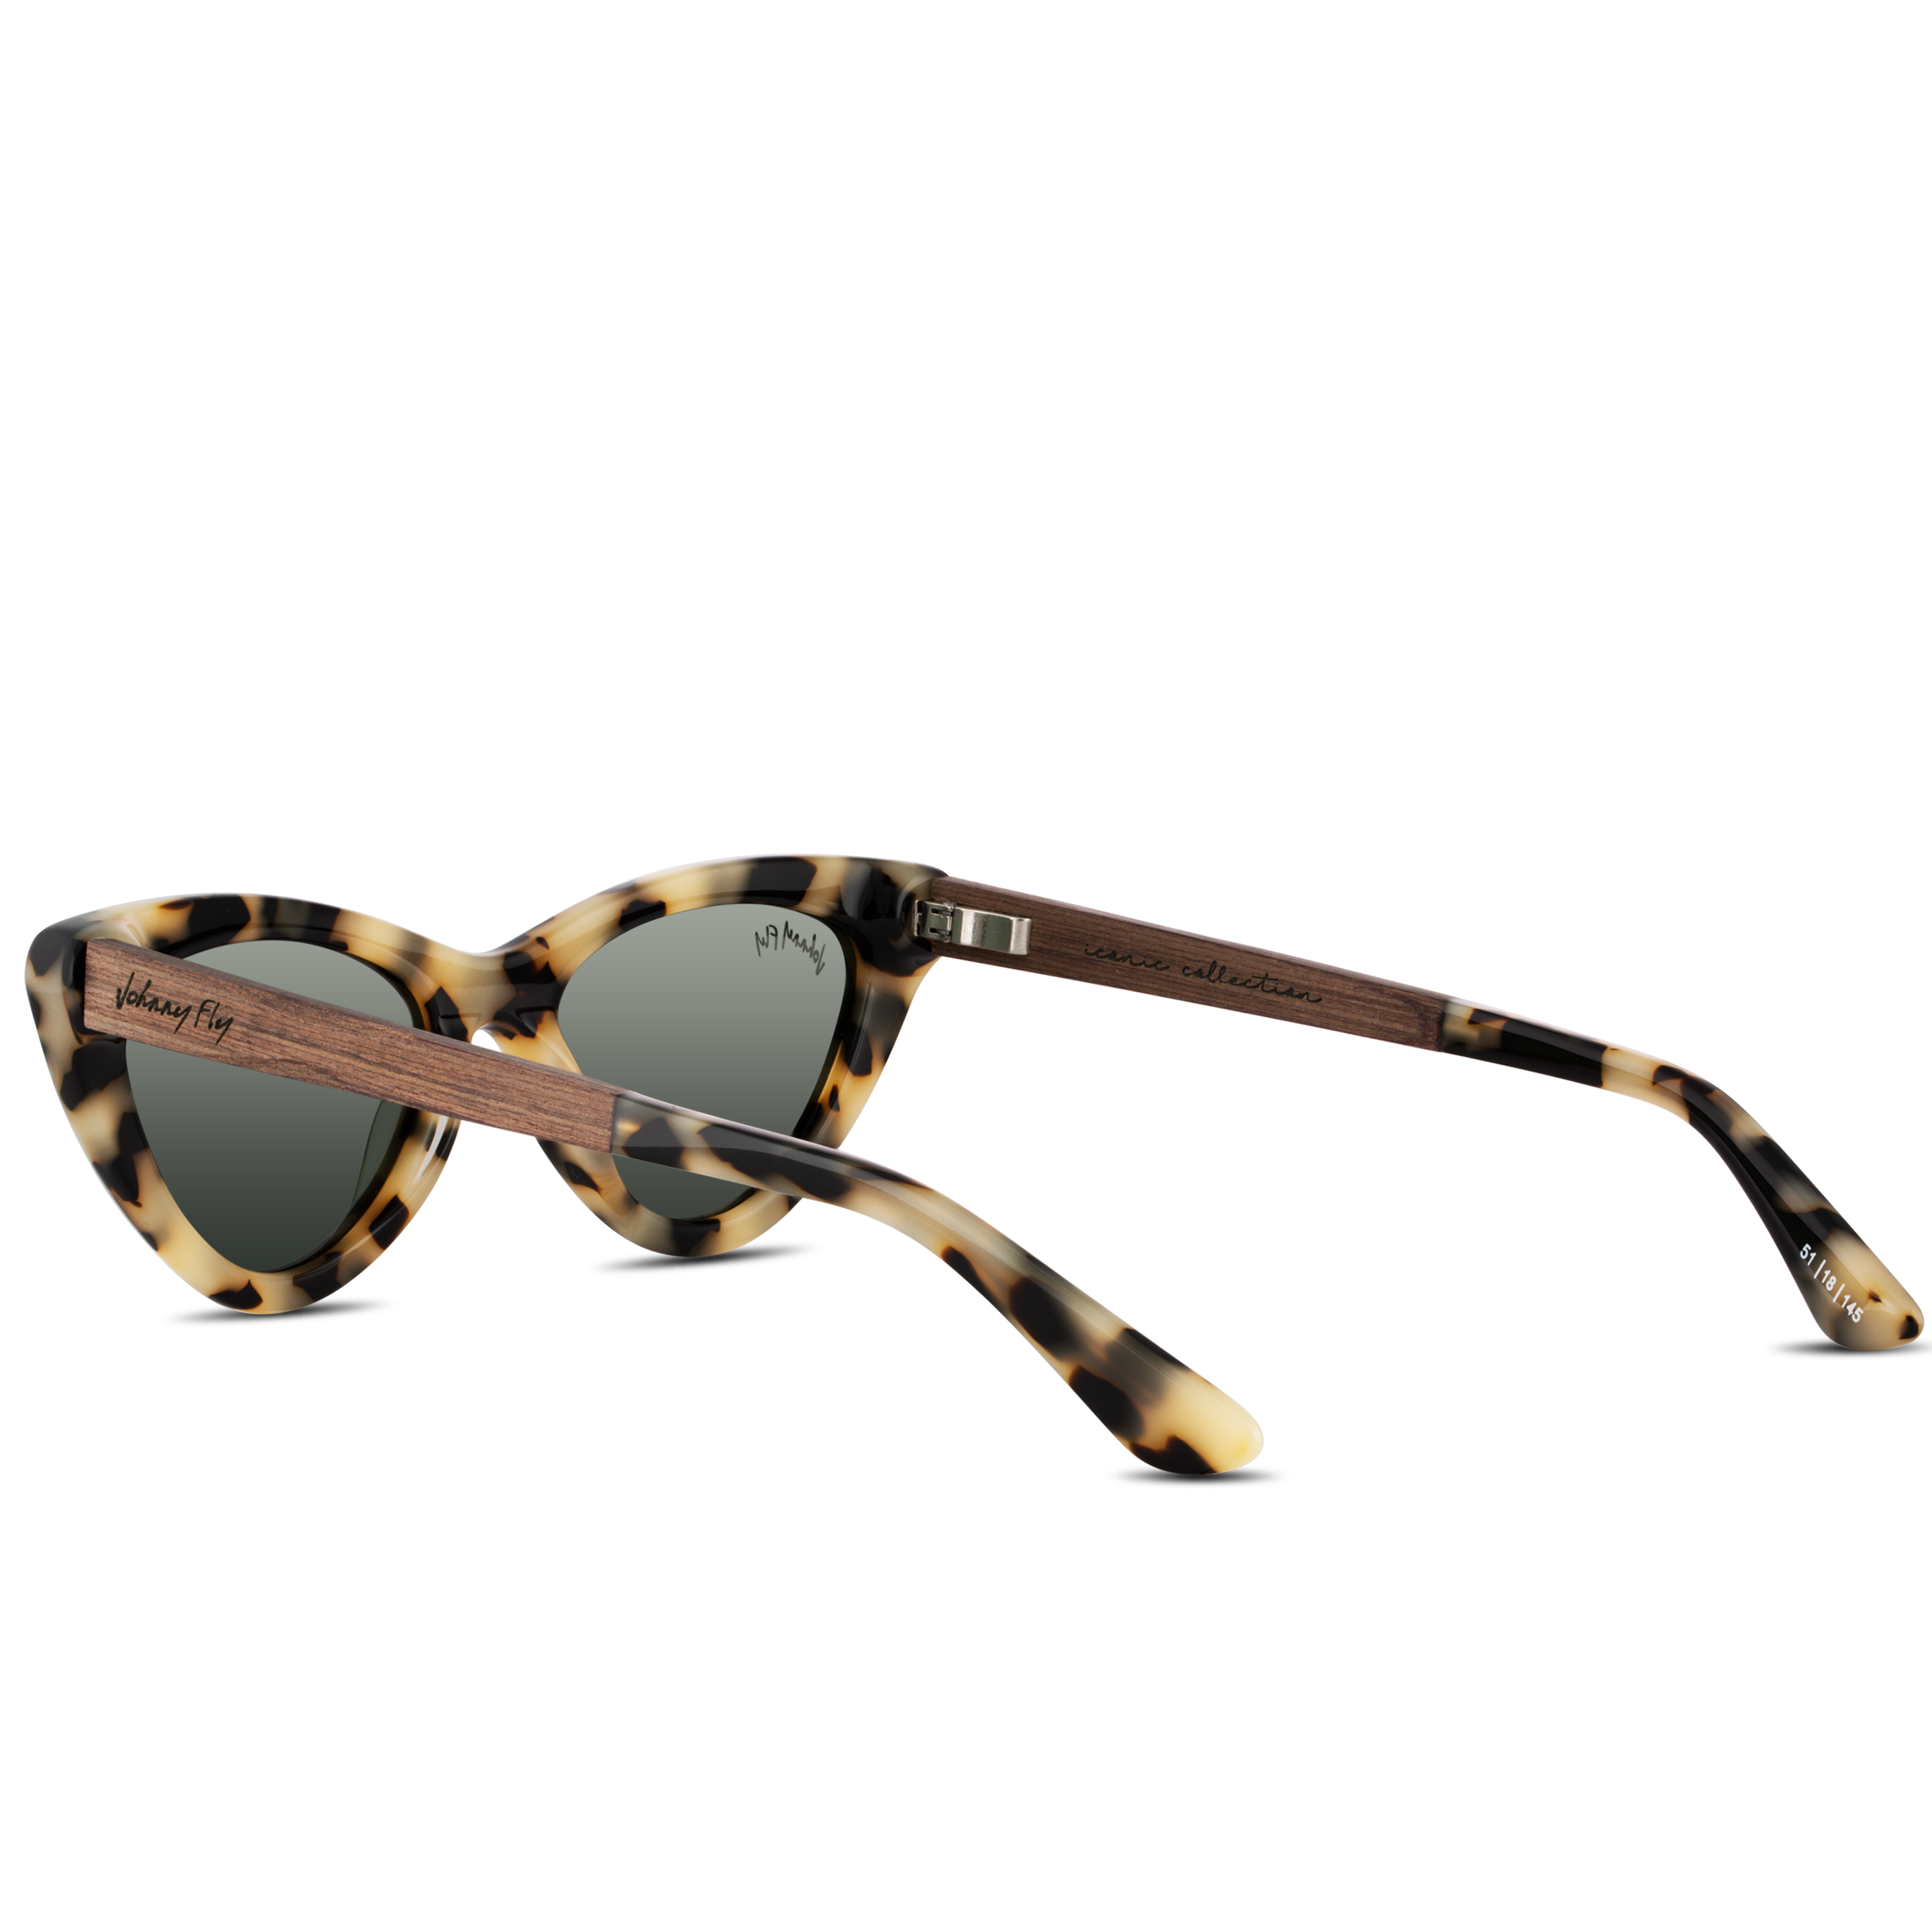 VISTA - White Tortoise - Sunglasses - Johnny Fly Eyewear | 